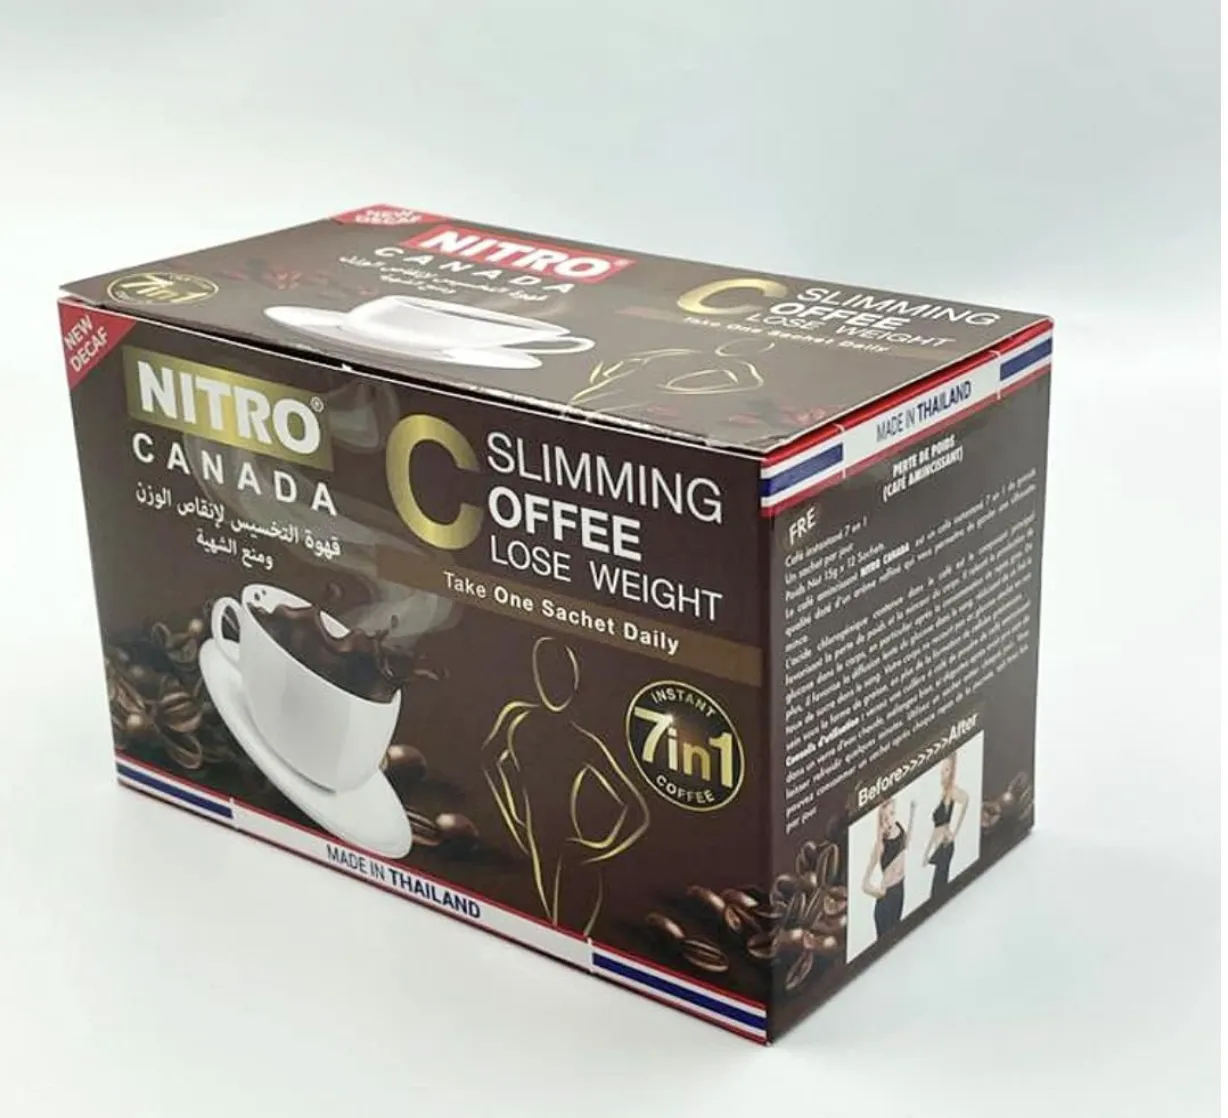 Кофе для похудения Таиланд Nitro Canada 7-в-1 (12 пакетиков)#6